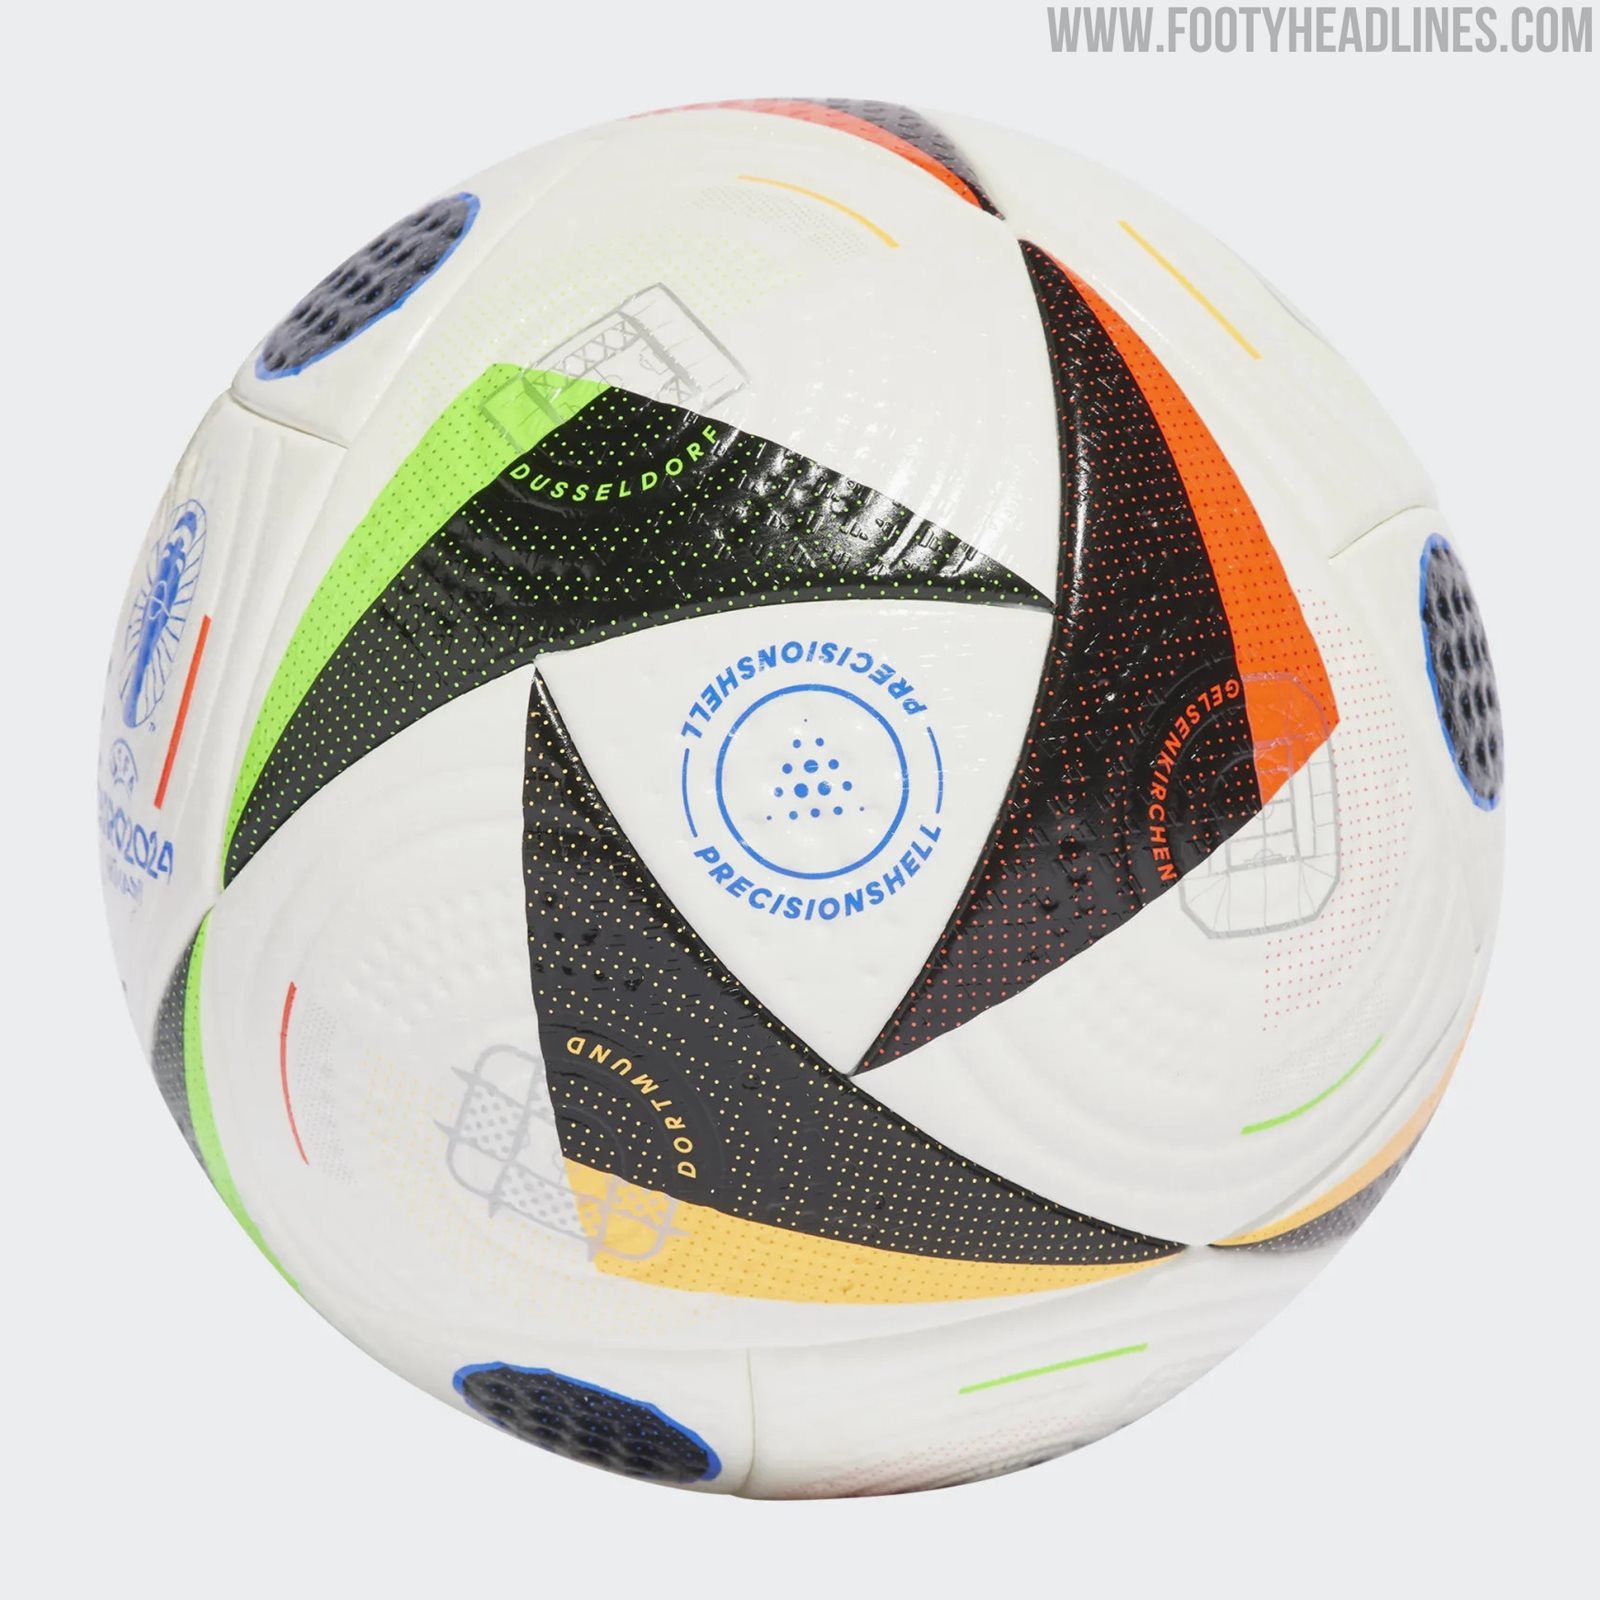 Ballon d'entraînement Adidas EURO 2024 - 24090-BRANCO